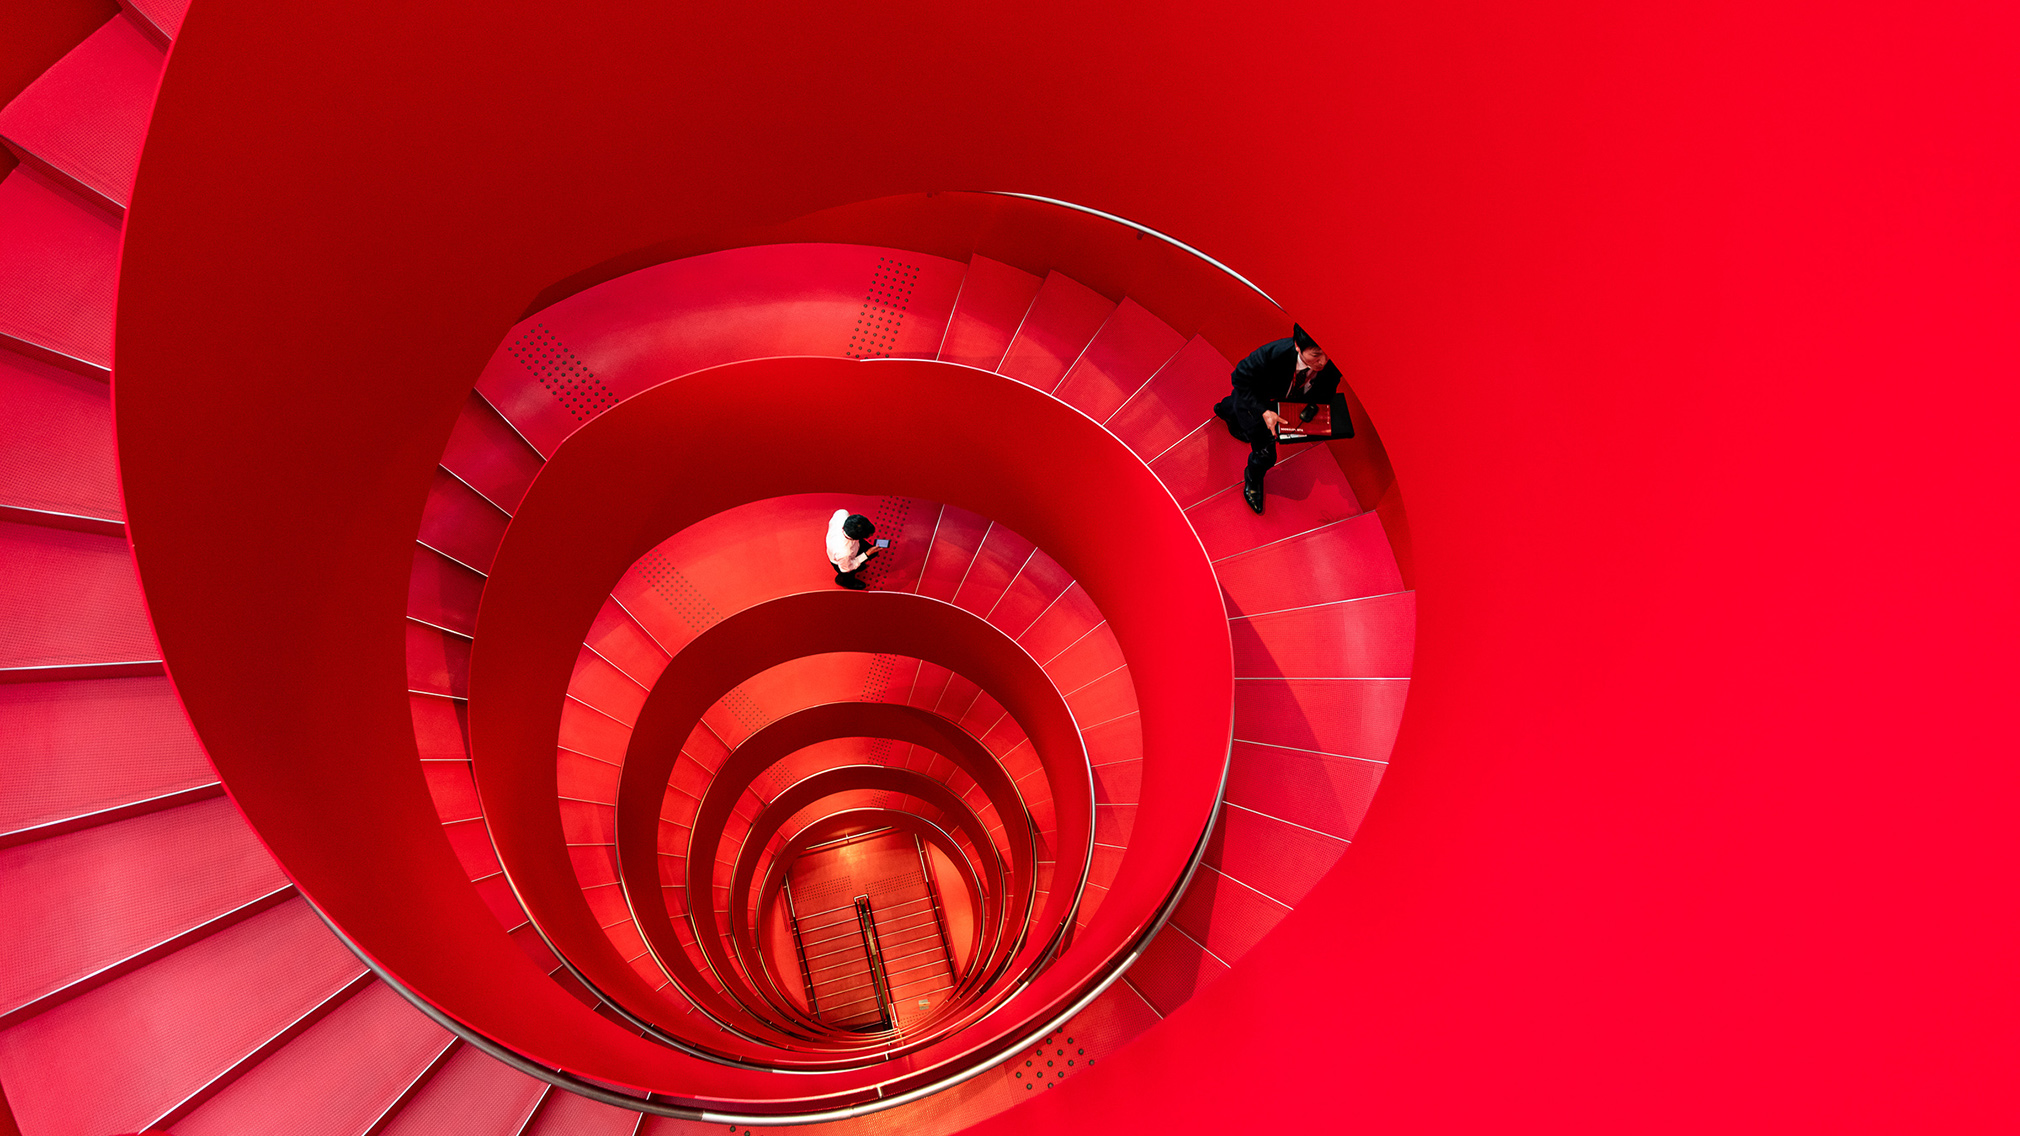 Des employés de Yanmar, entreprise de nouvelle technologie agricole, montent un escalier en colimaçon rouge